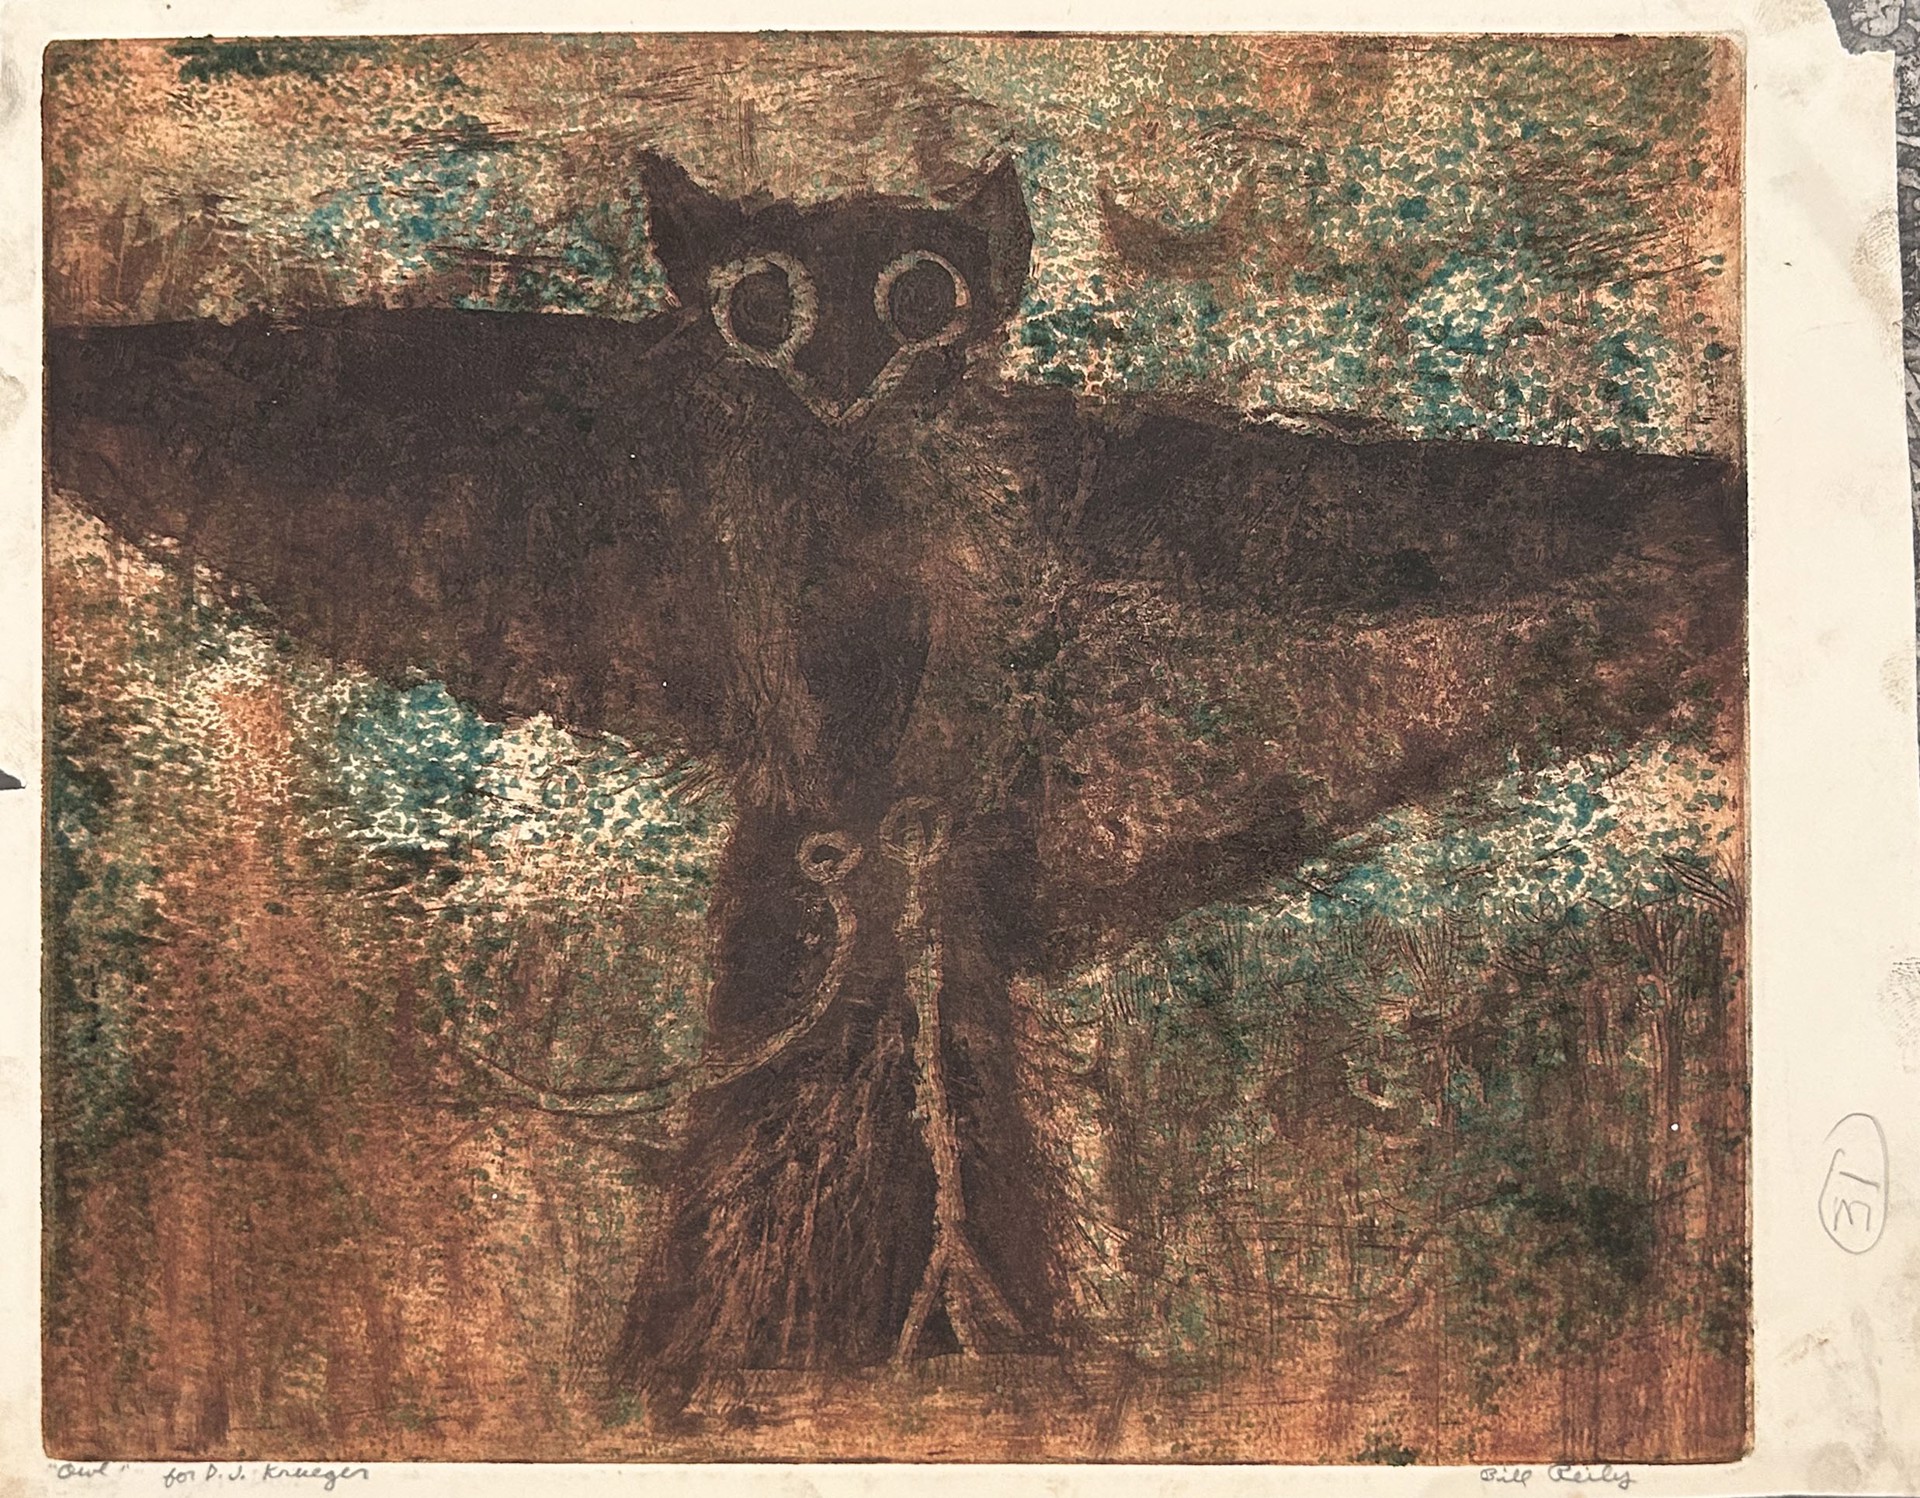 31c. Owl by Bill Reily - Prints